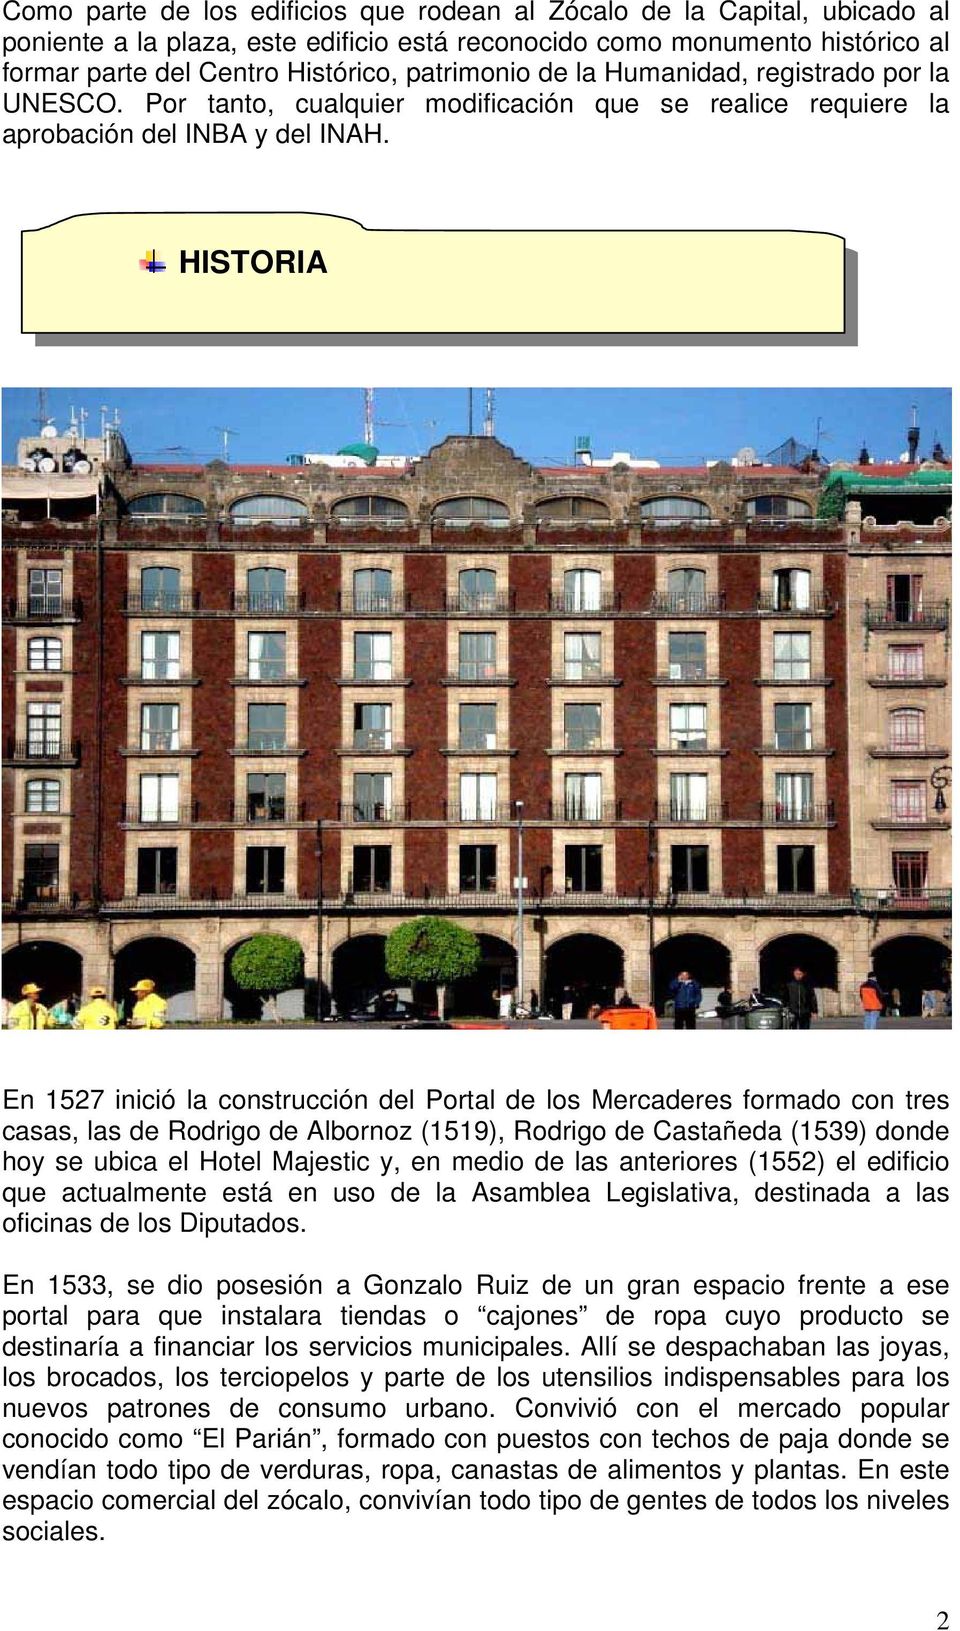 HISTORIA En 1527 inició la construcción del Portal de los Mercaderes formado con tres casas, las de Rodrigo de Albornoz (1519), Rodrigo de Castañeda (1539) donde hoy se ubica el Hotel Majestic y, en